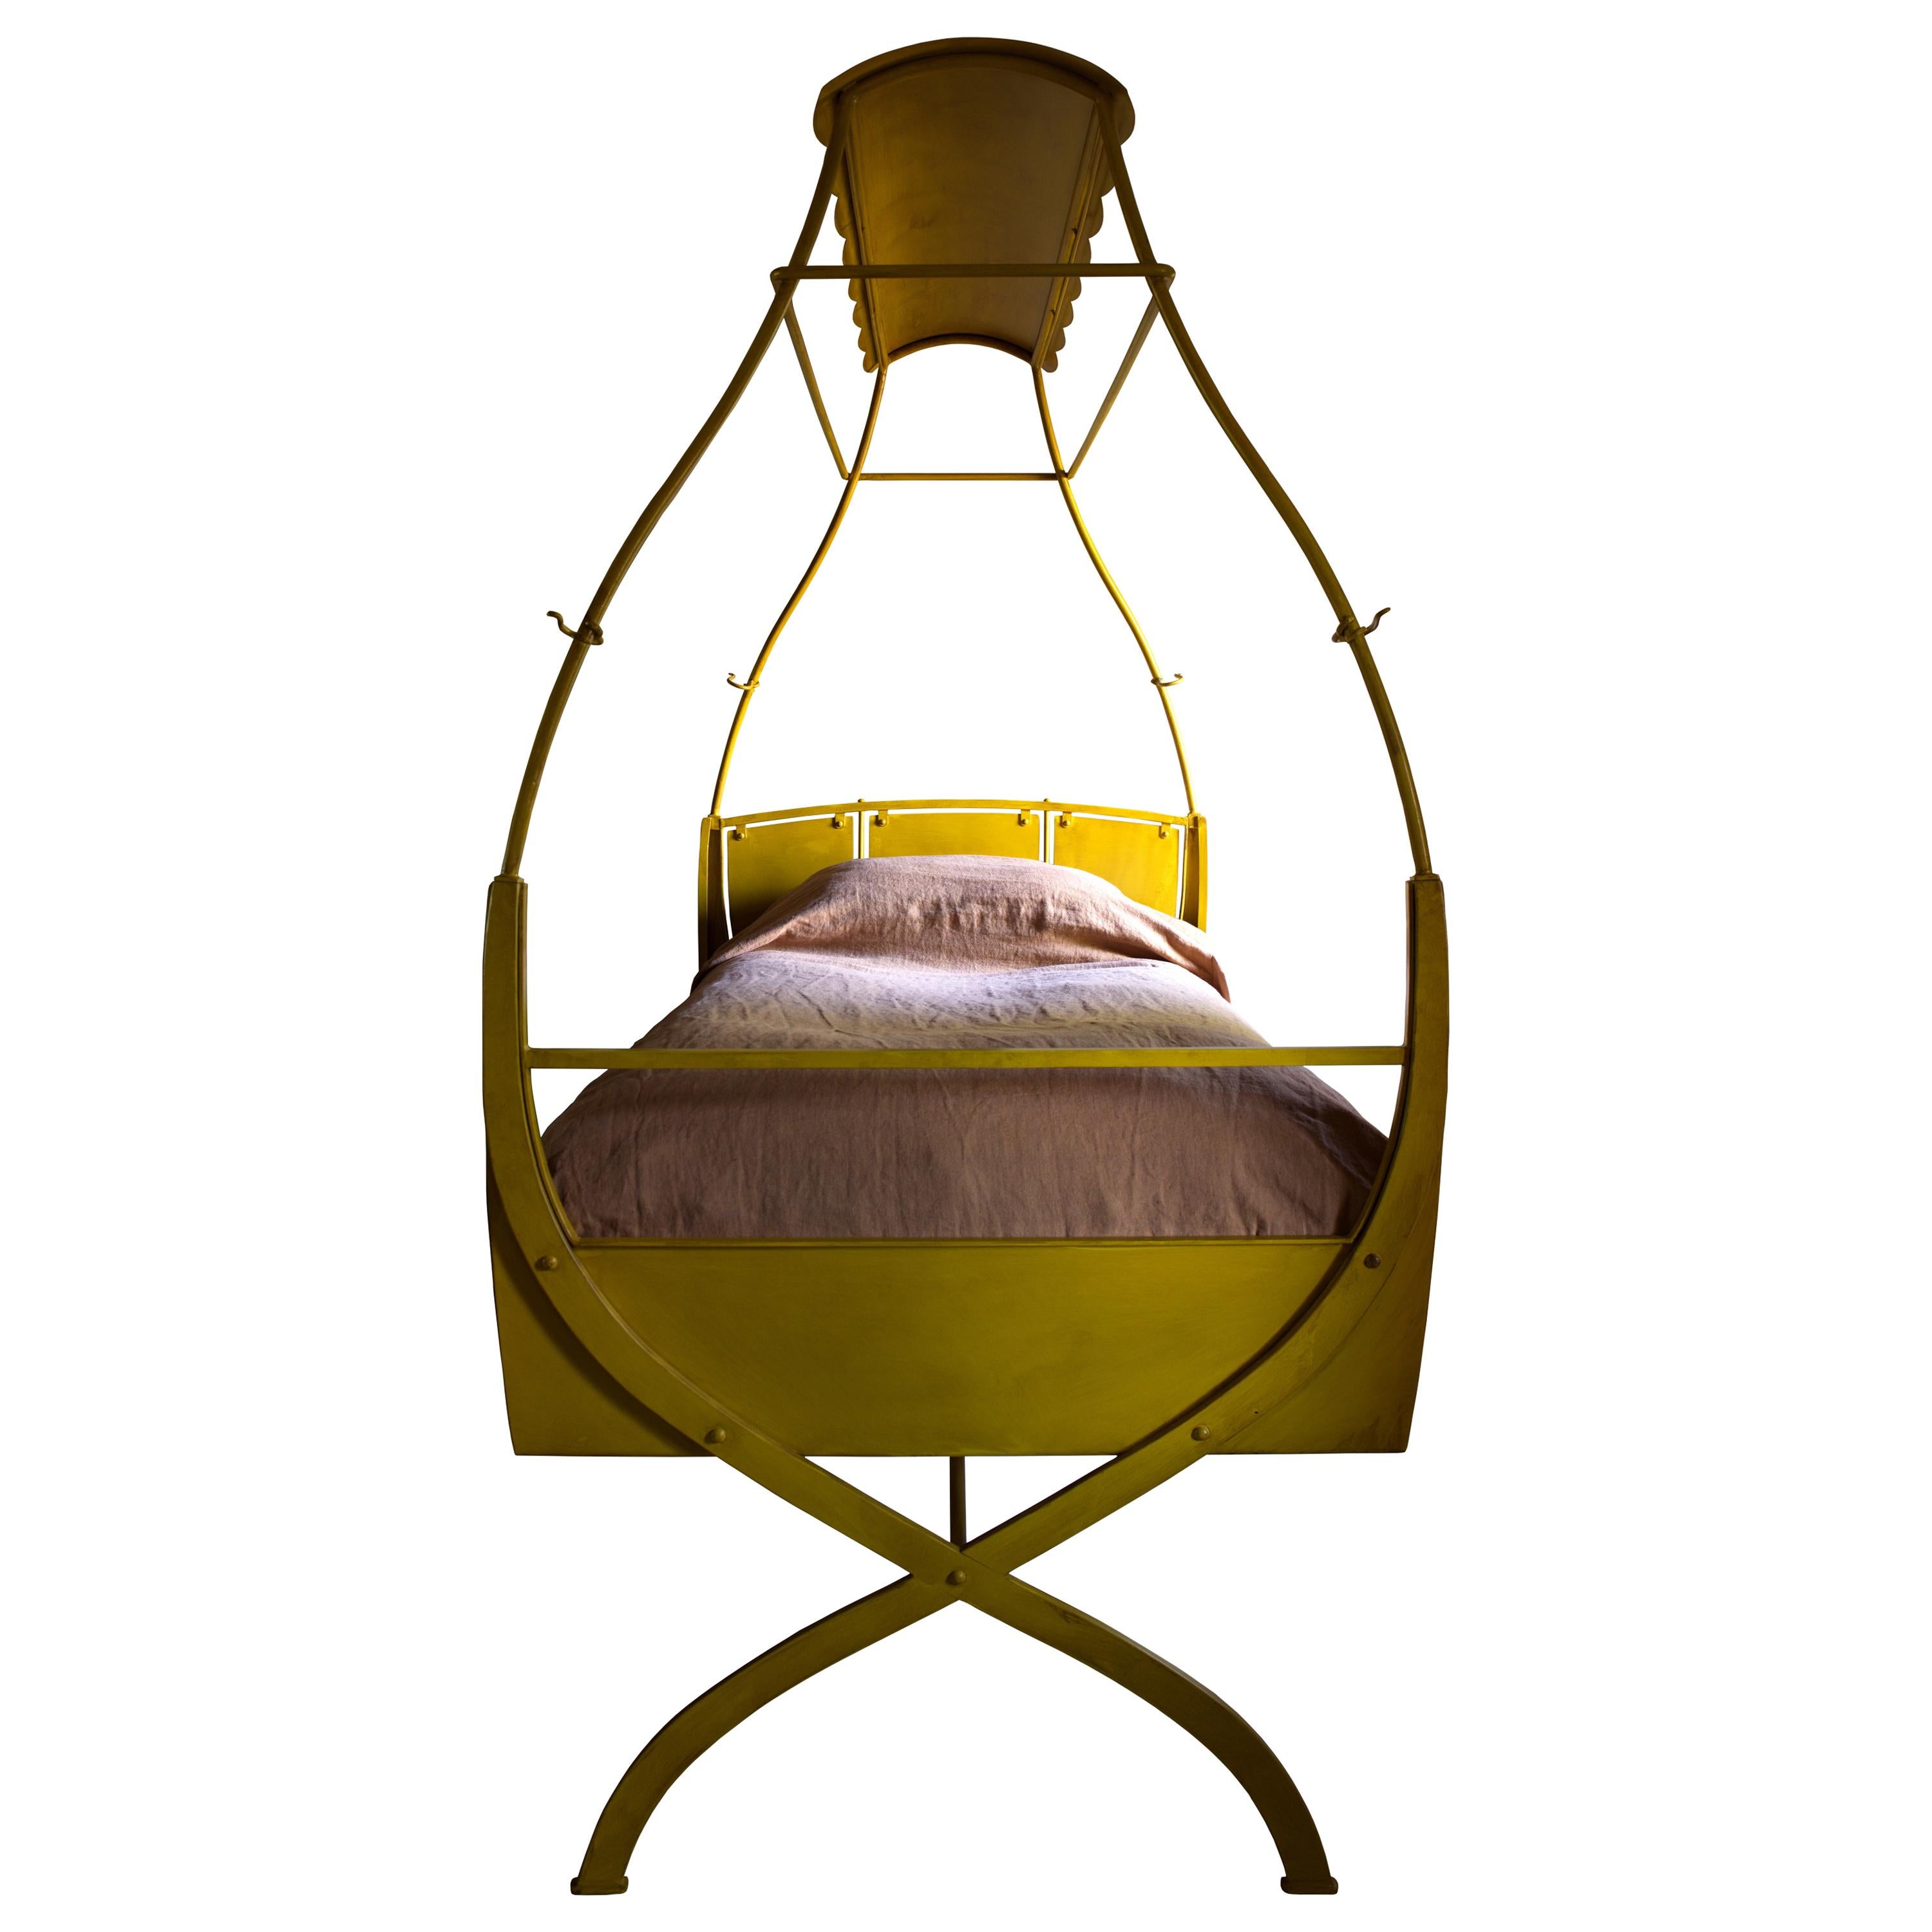 Kanarienvogelbett:: X-Rahmen-Bett aus lackiertem Stahl:: teils Fahrgeschäft:: teils Schaukel